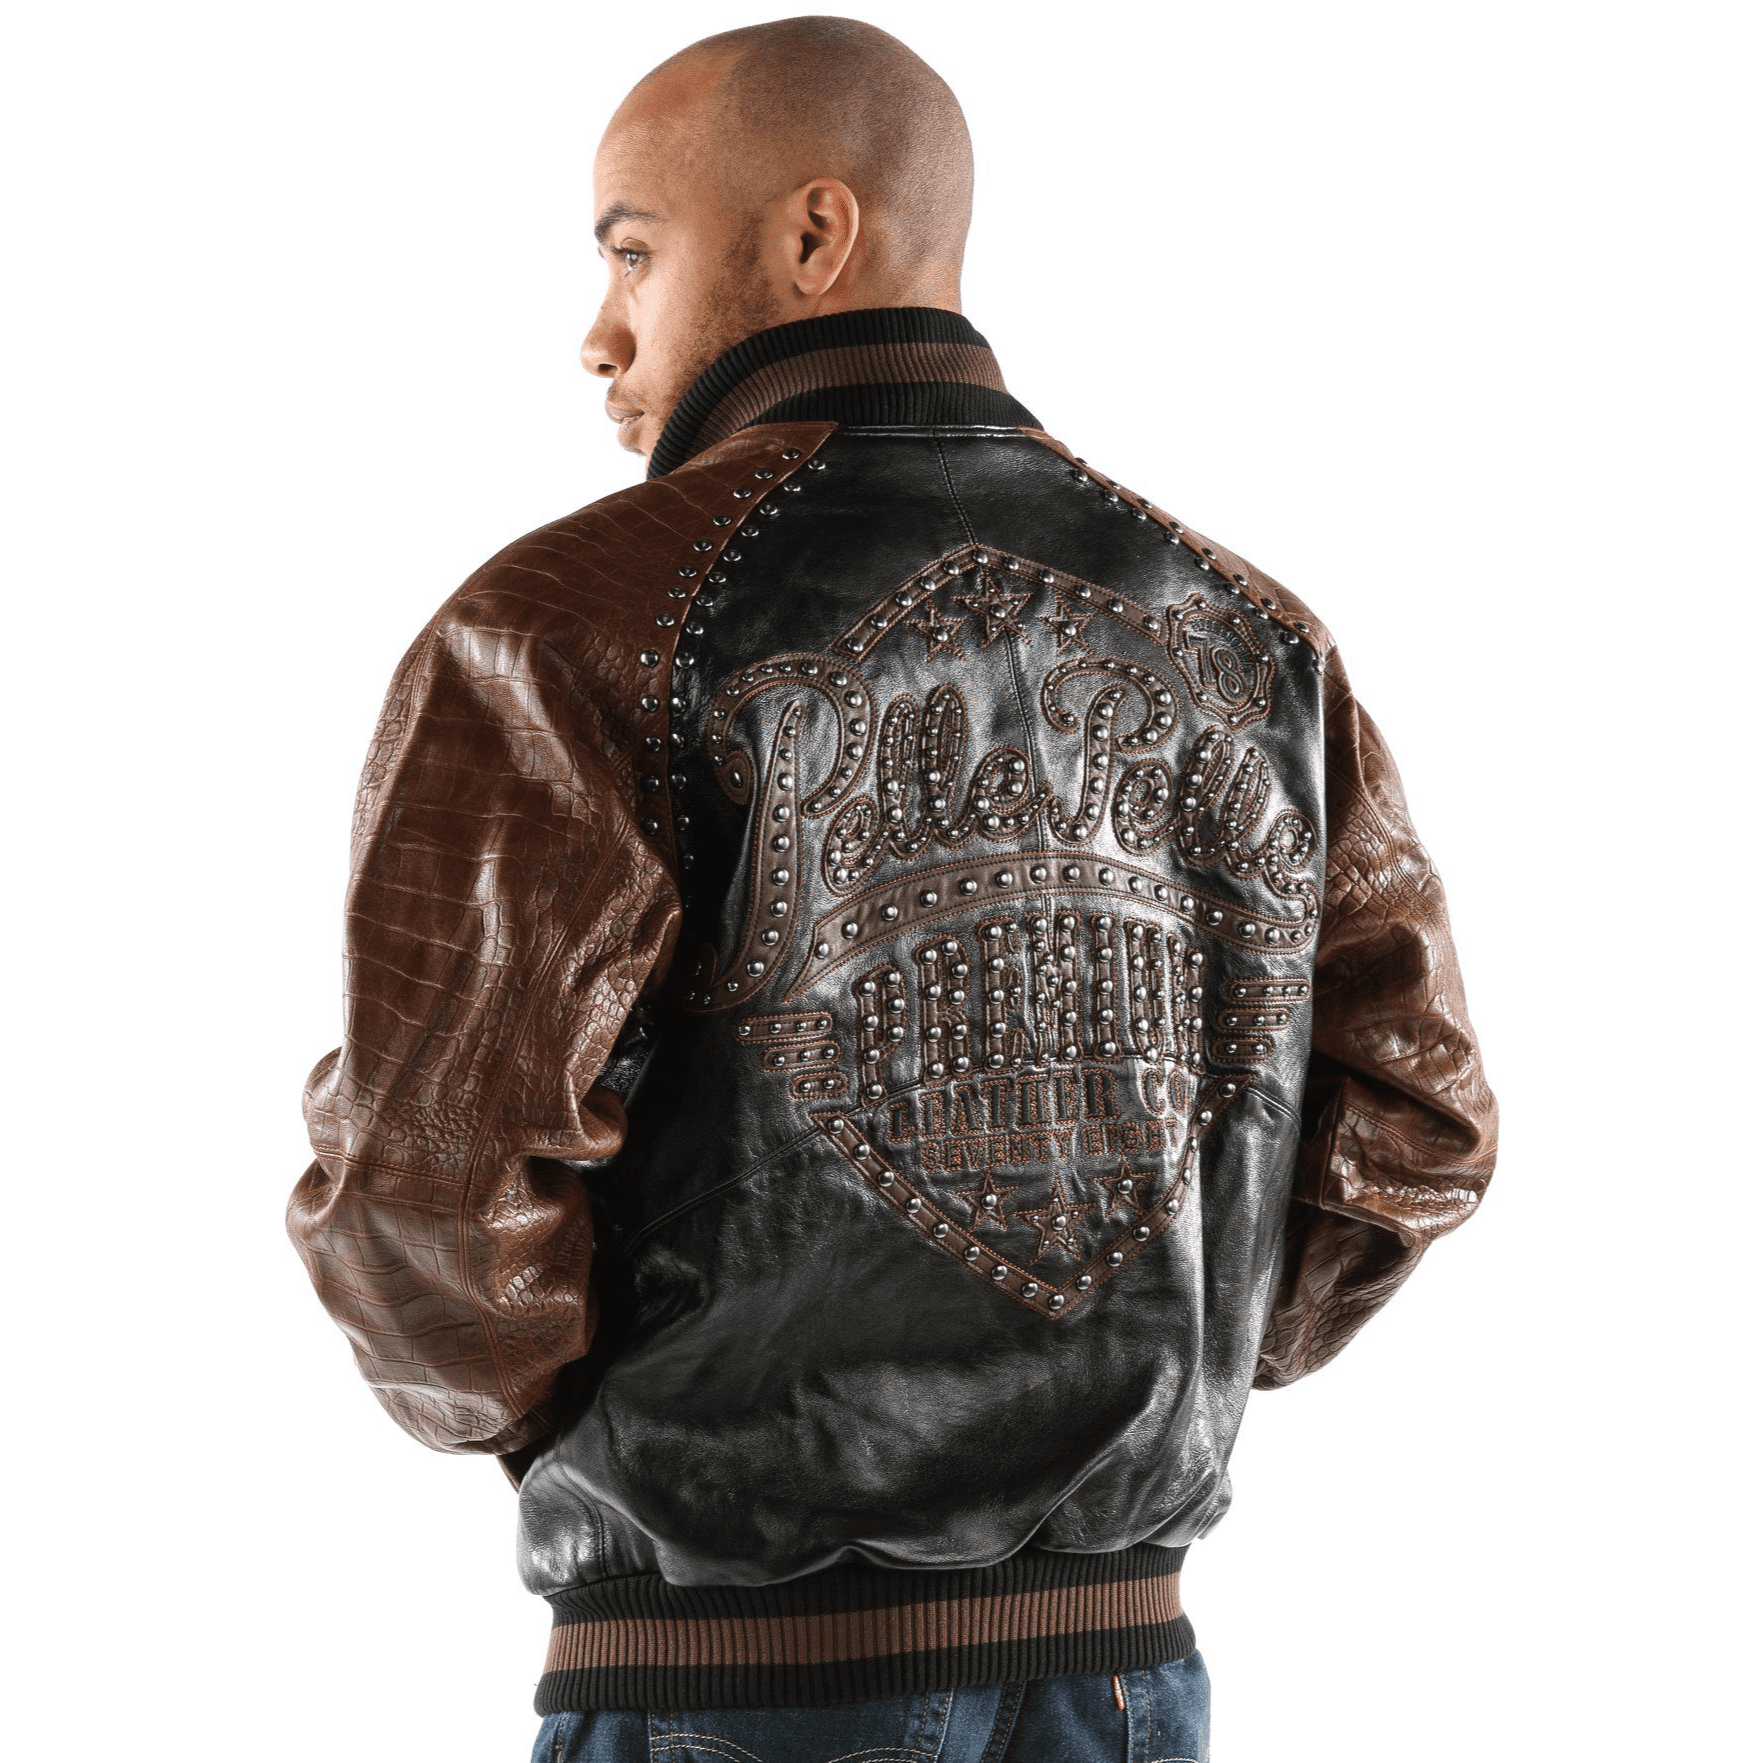 Pelle Pelle Studded Tiger Leather Jacket - Maker of Jacket